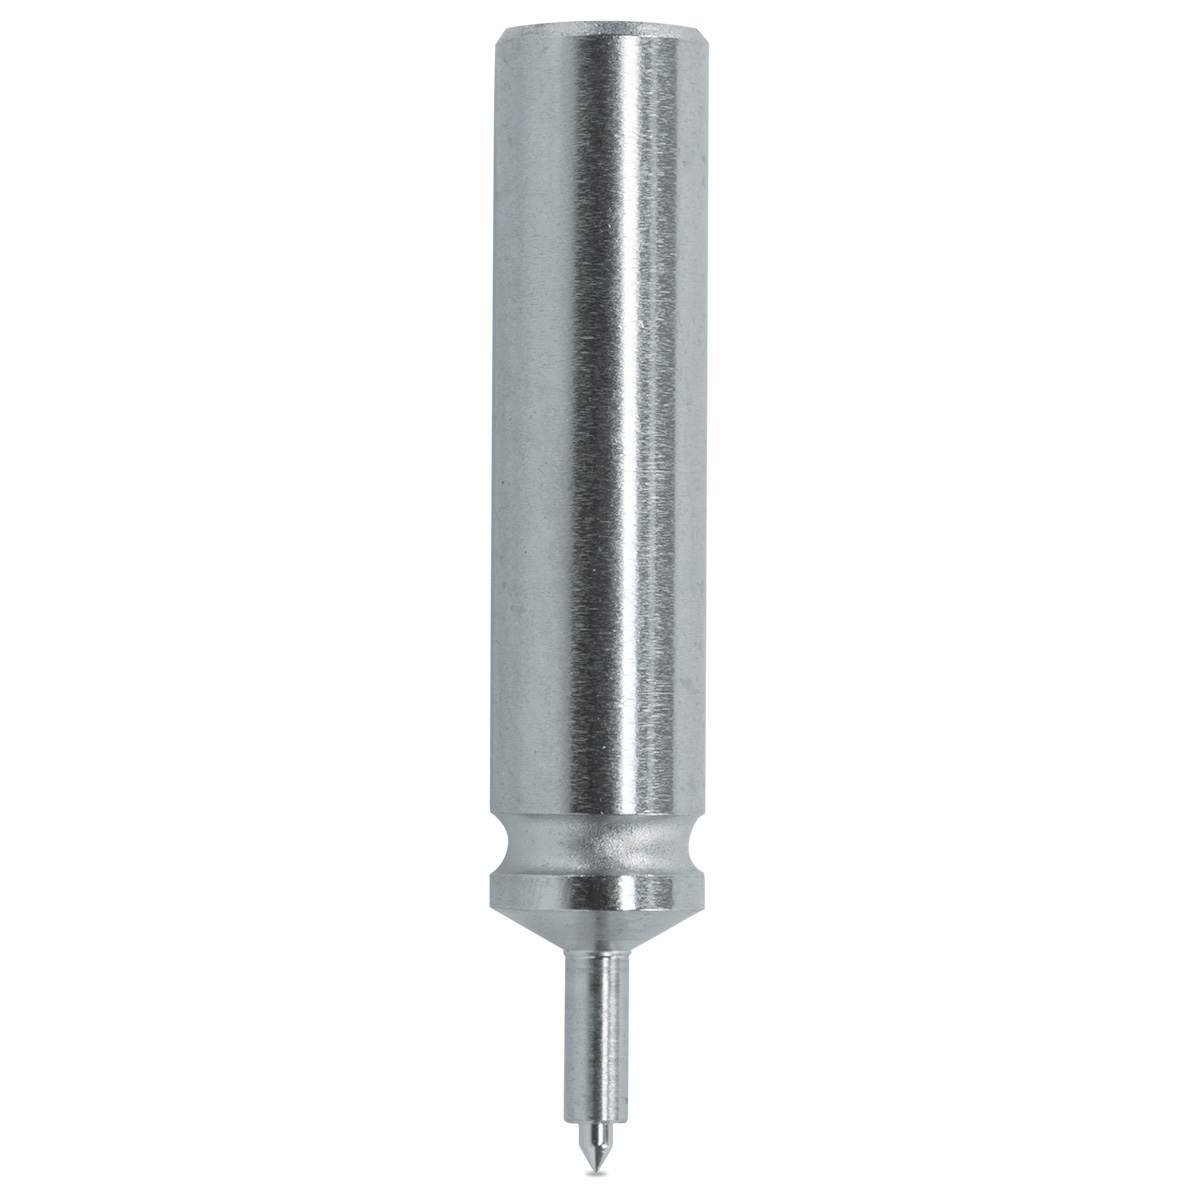 Pump pusher Horia 1000-03 N° 70, Ø body 3 mm, Ø tip 0,4 mm, support Ø 0,65 mm